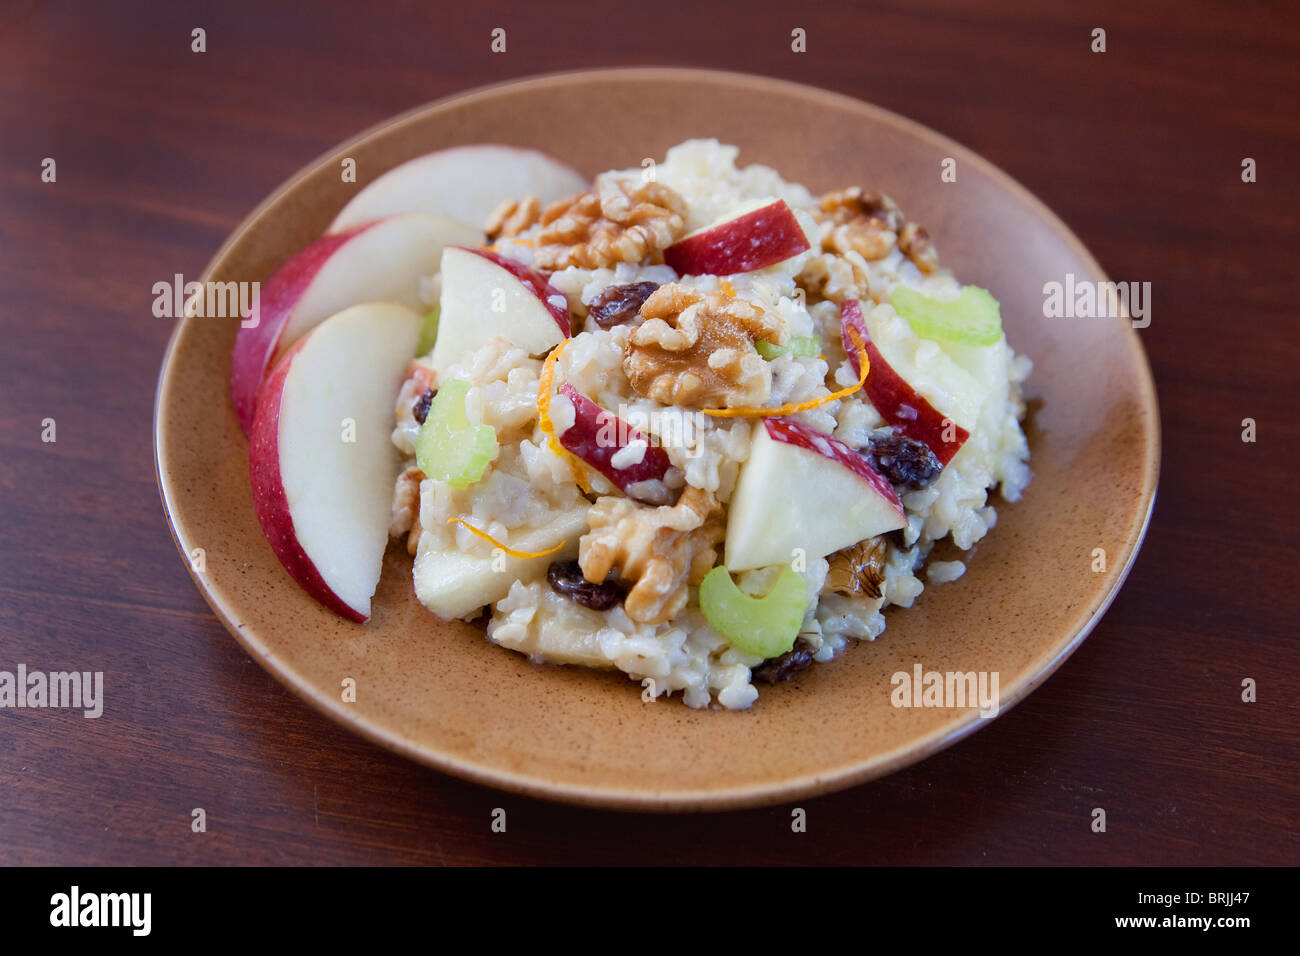 ein Teller mit Apfel Walnuss Salat ähnlich Waldorfsalat auf braune Teller Stockfoto